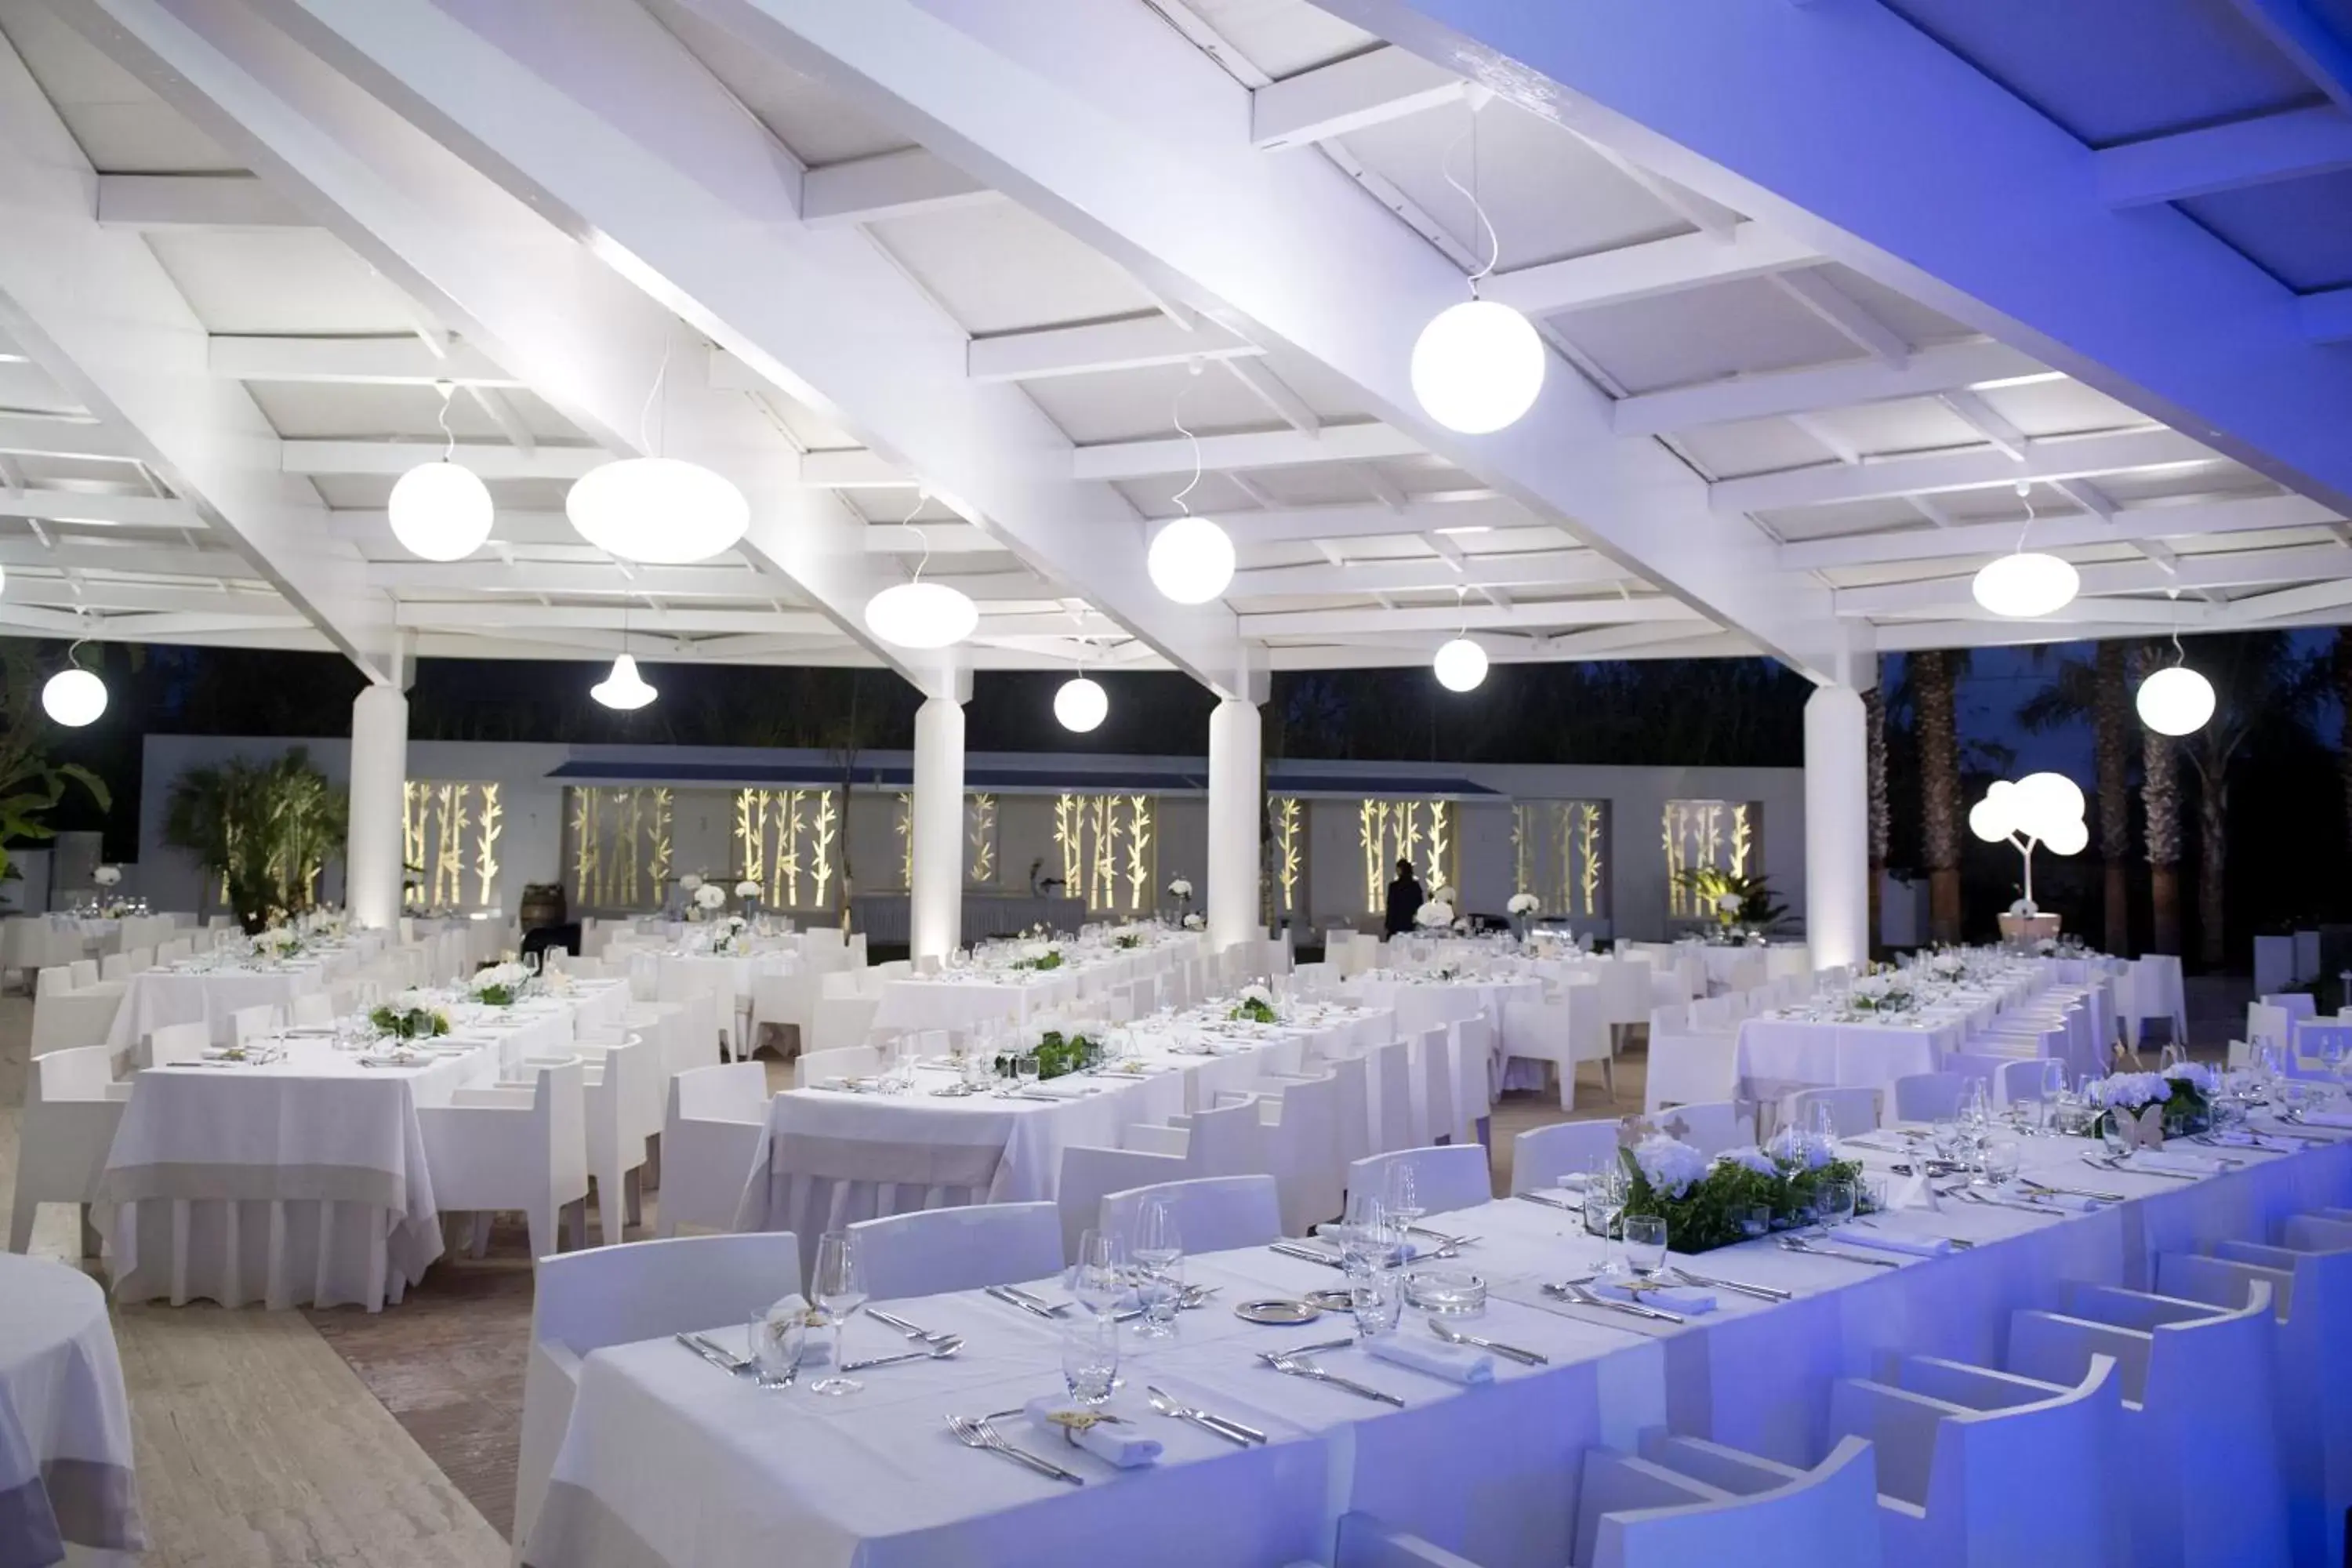 Restaurant/places to eat, Banquet Facilities in Mec Paestum Hotel